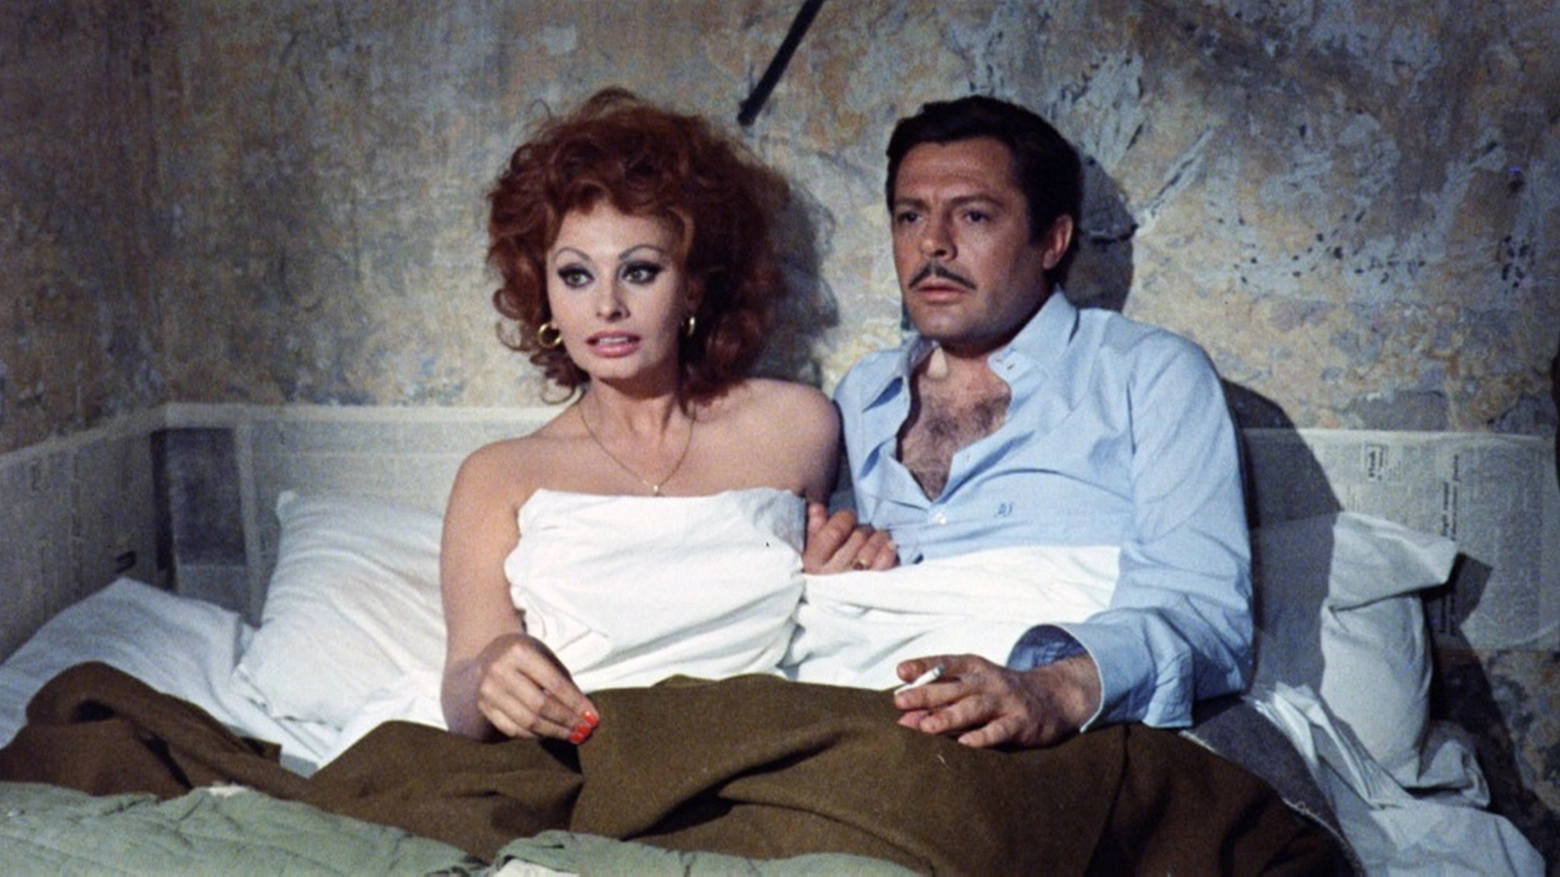 Sophia Loren e Marcello Mastroianni in "Matrimonio all'italiana", 1964